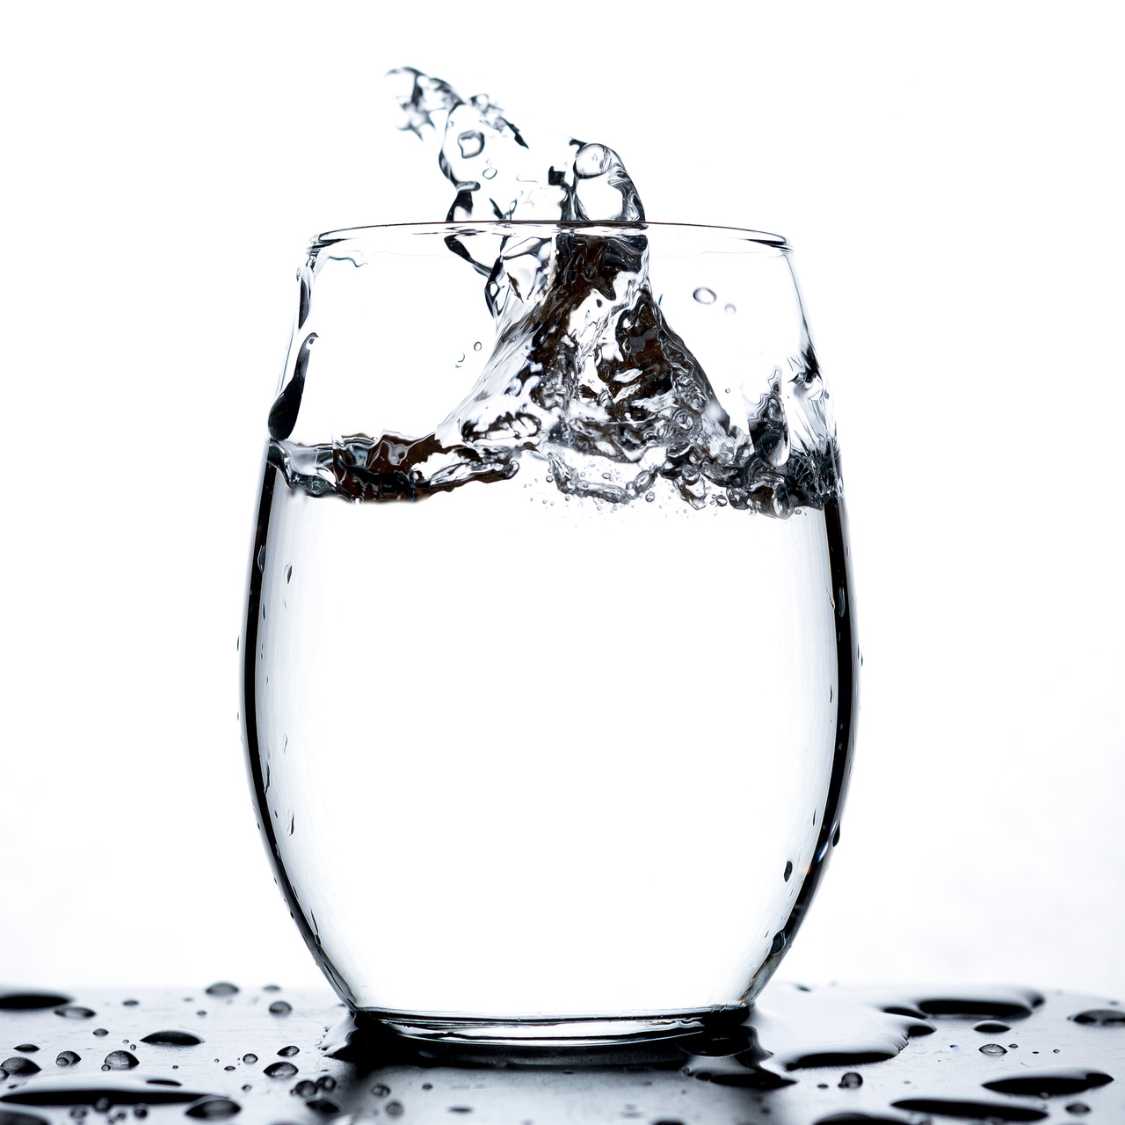 Un verre d'eau claire, grâce au filtre à eau GenericFilter pour carafe filtrante Brita